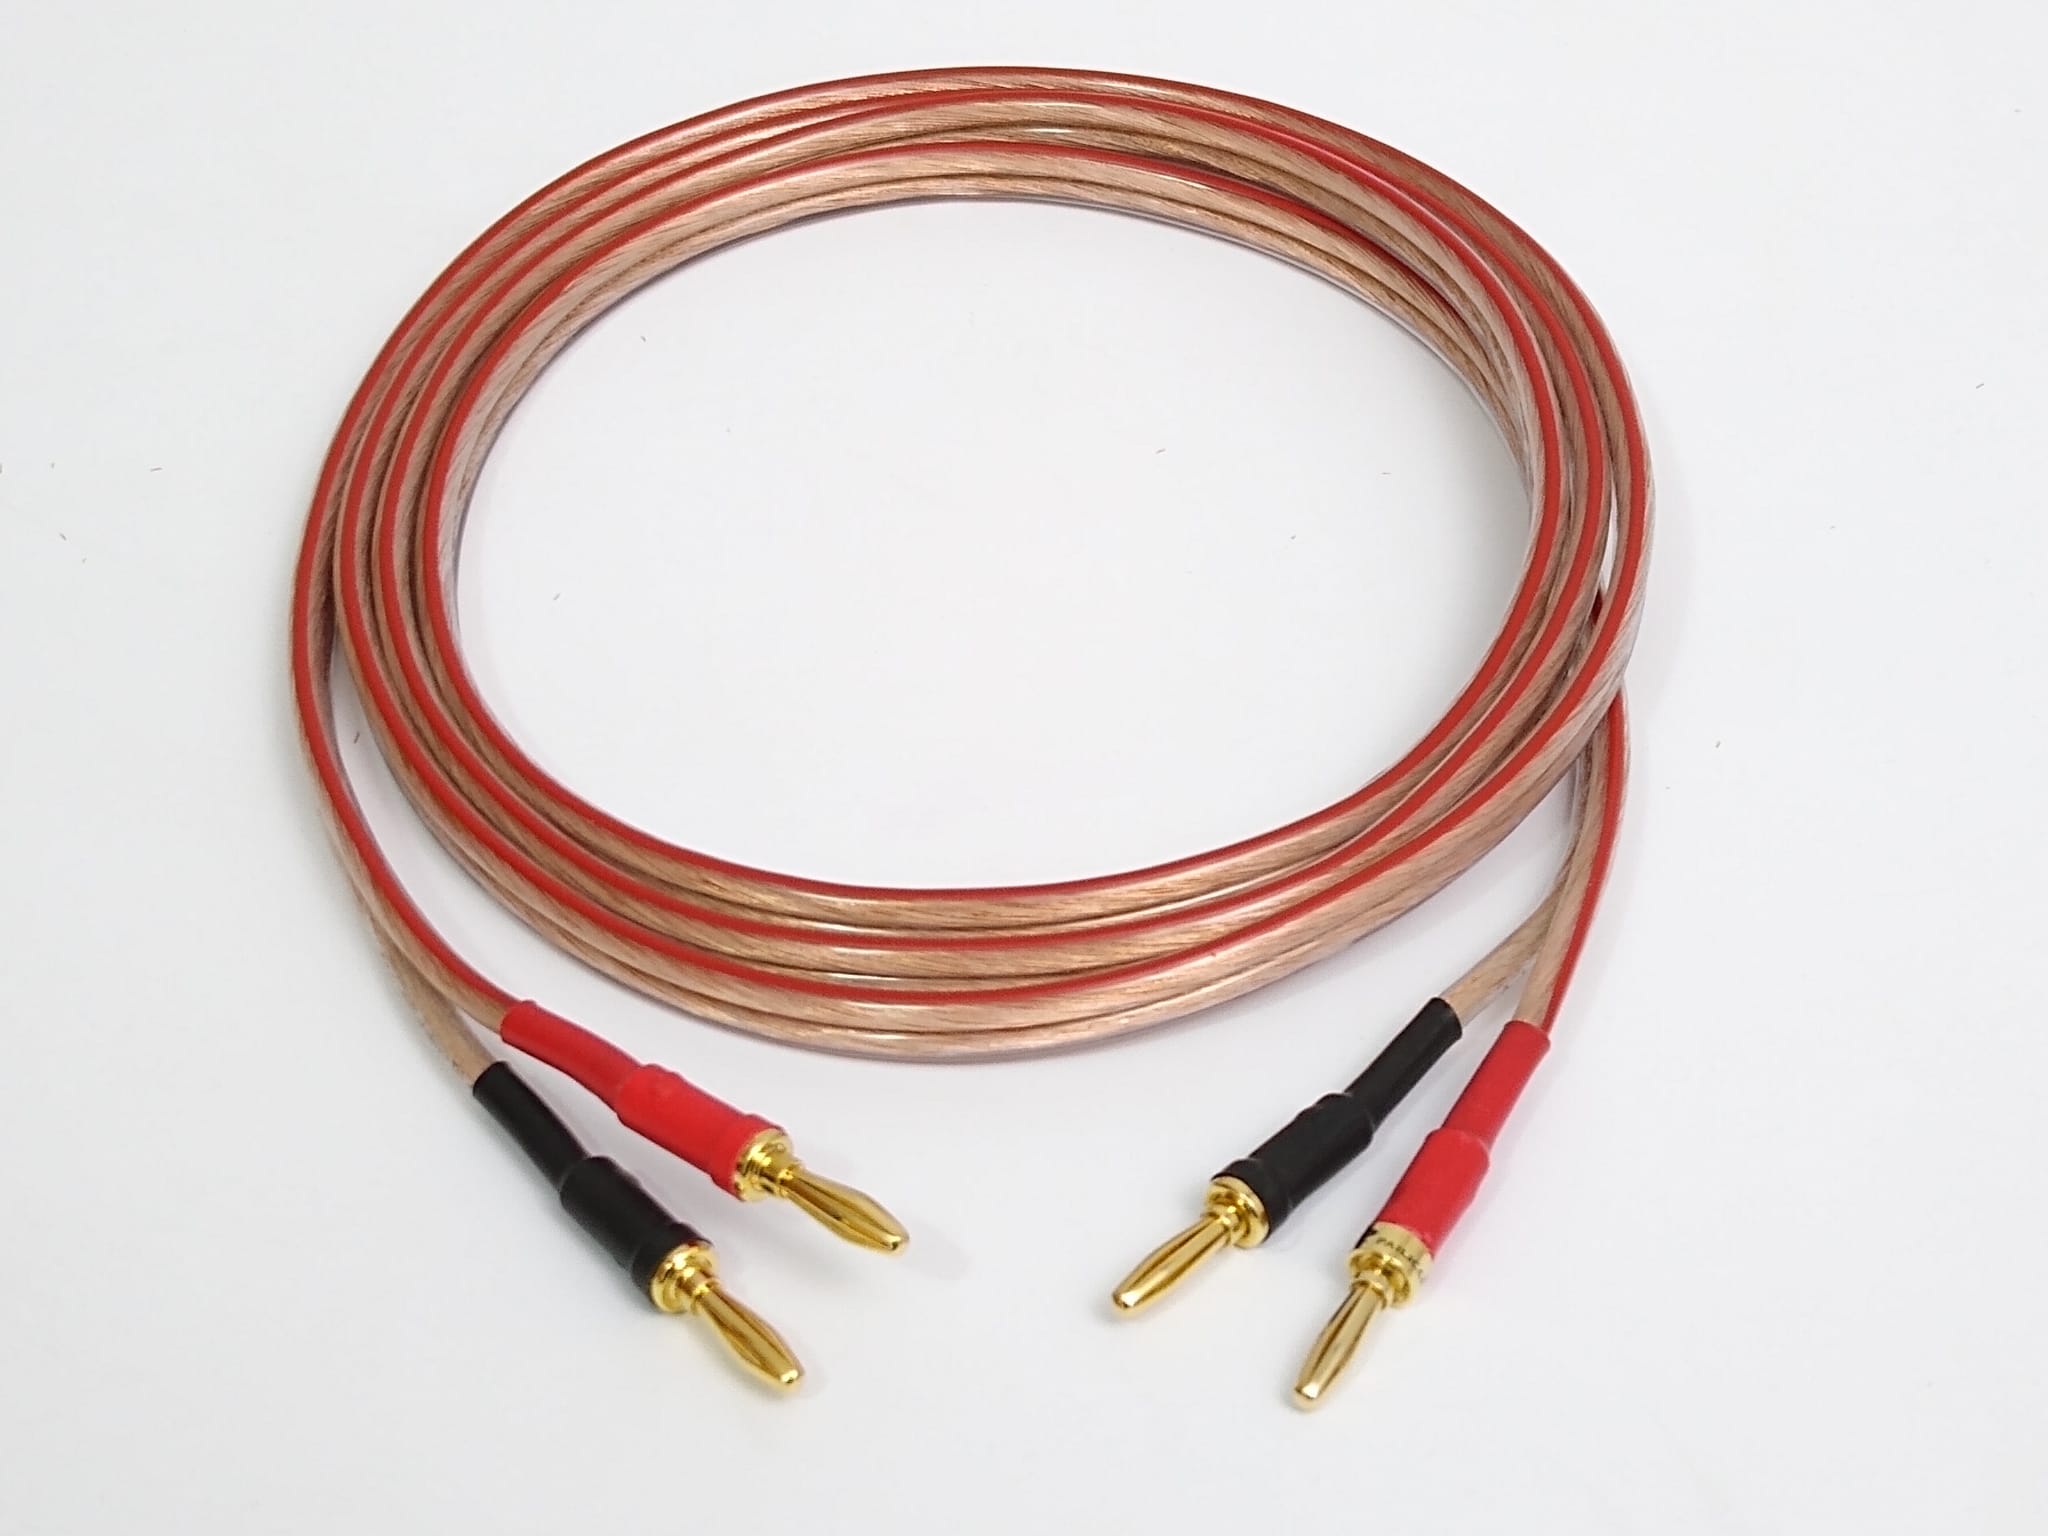  UCINNOVATE Cable de cable de altavoz HiFi OFC con enchufe tipo  plátano, paquete de 2 unidades de cobre puro de alta gama de 4.9 ft  chapados en oro, conectores de punta